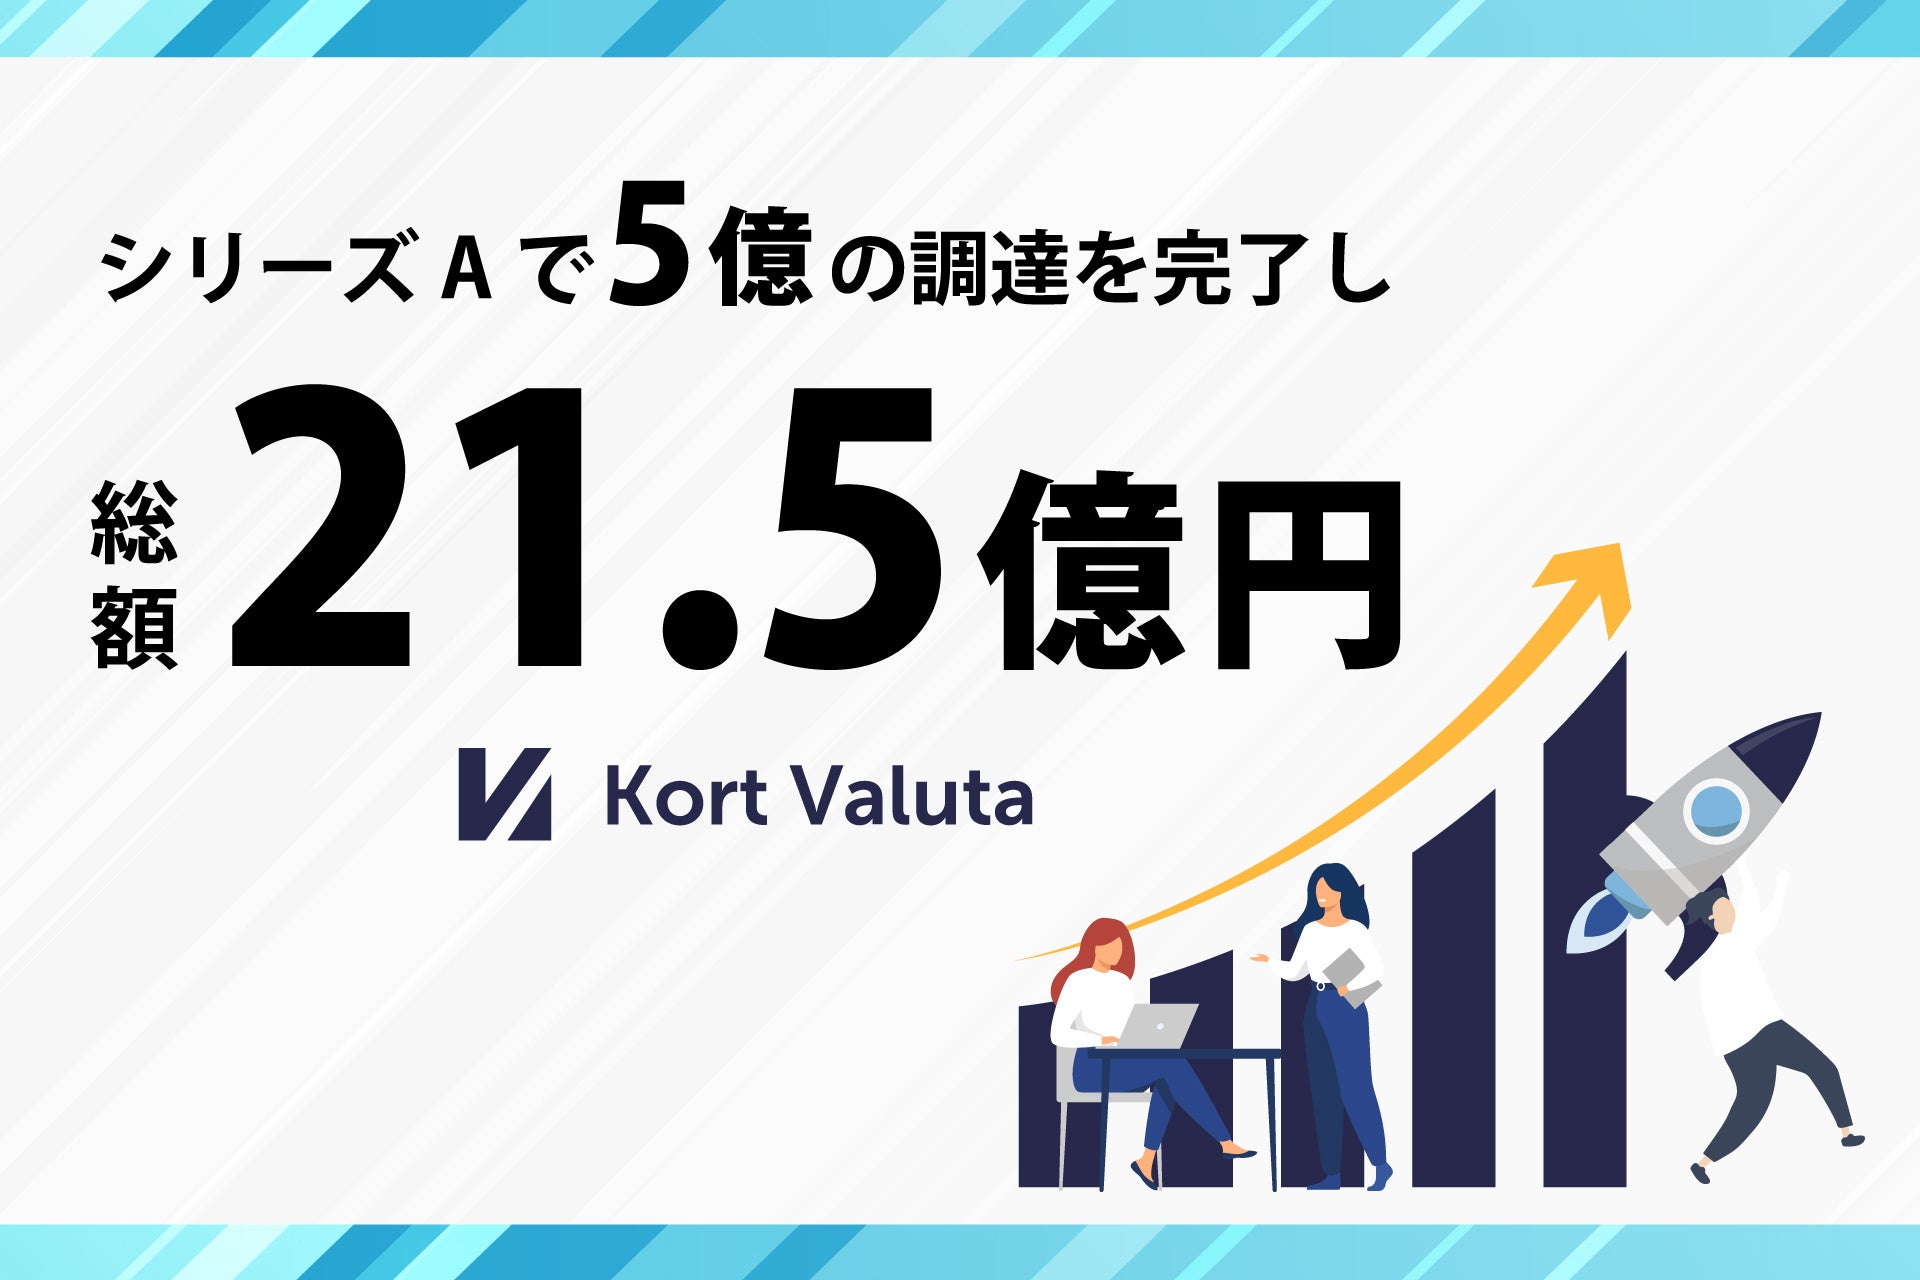 「IDTech」を展開する株式会社Kort Valuta、総額約5億円によるシリーズA資金調達を実施